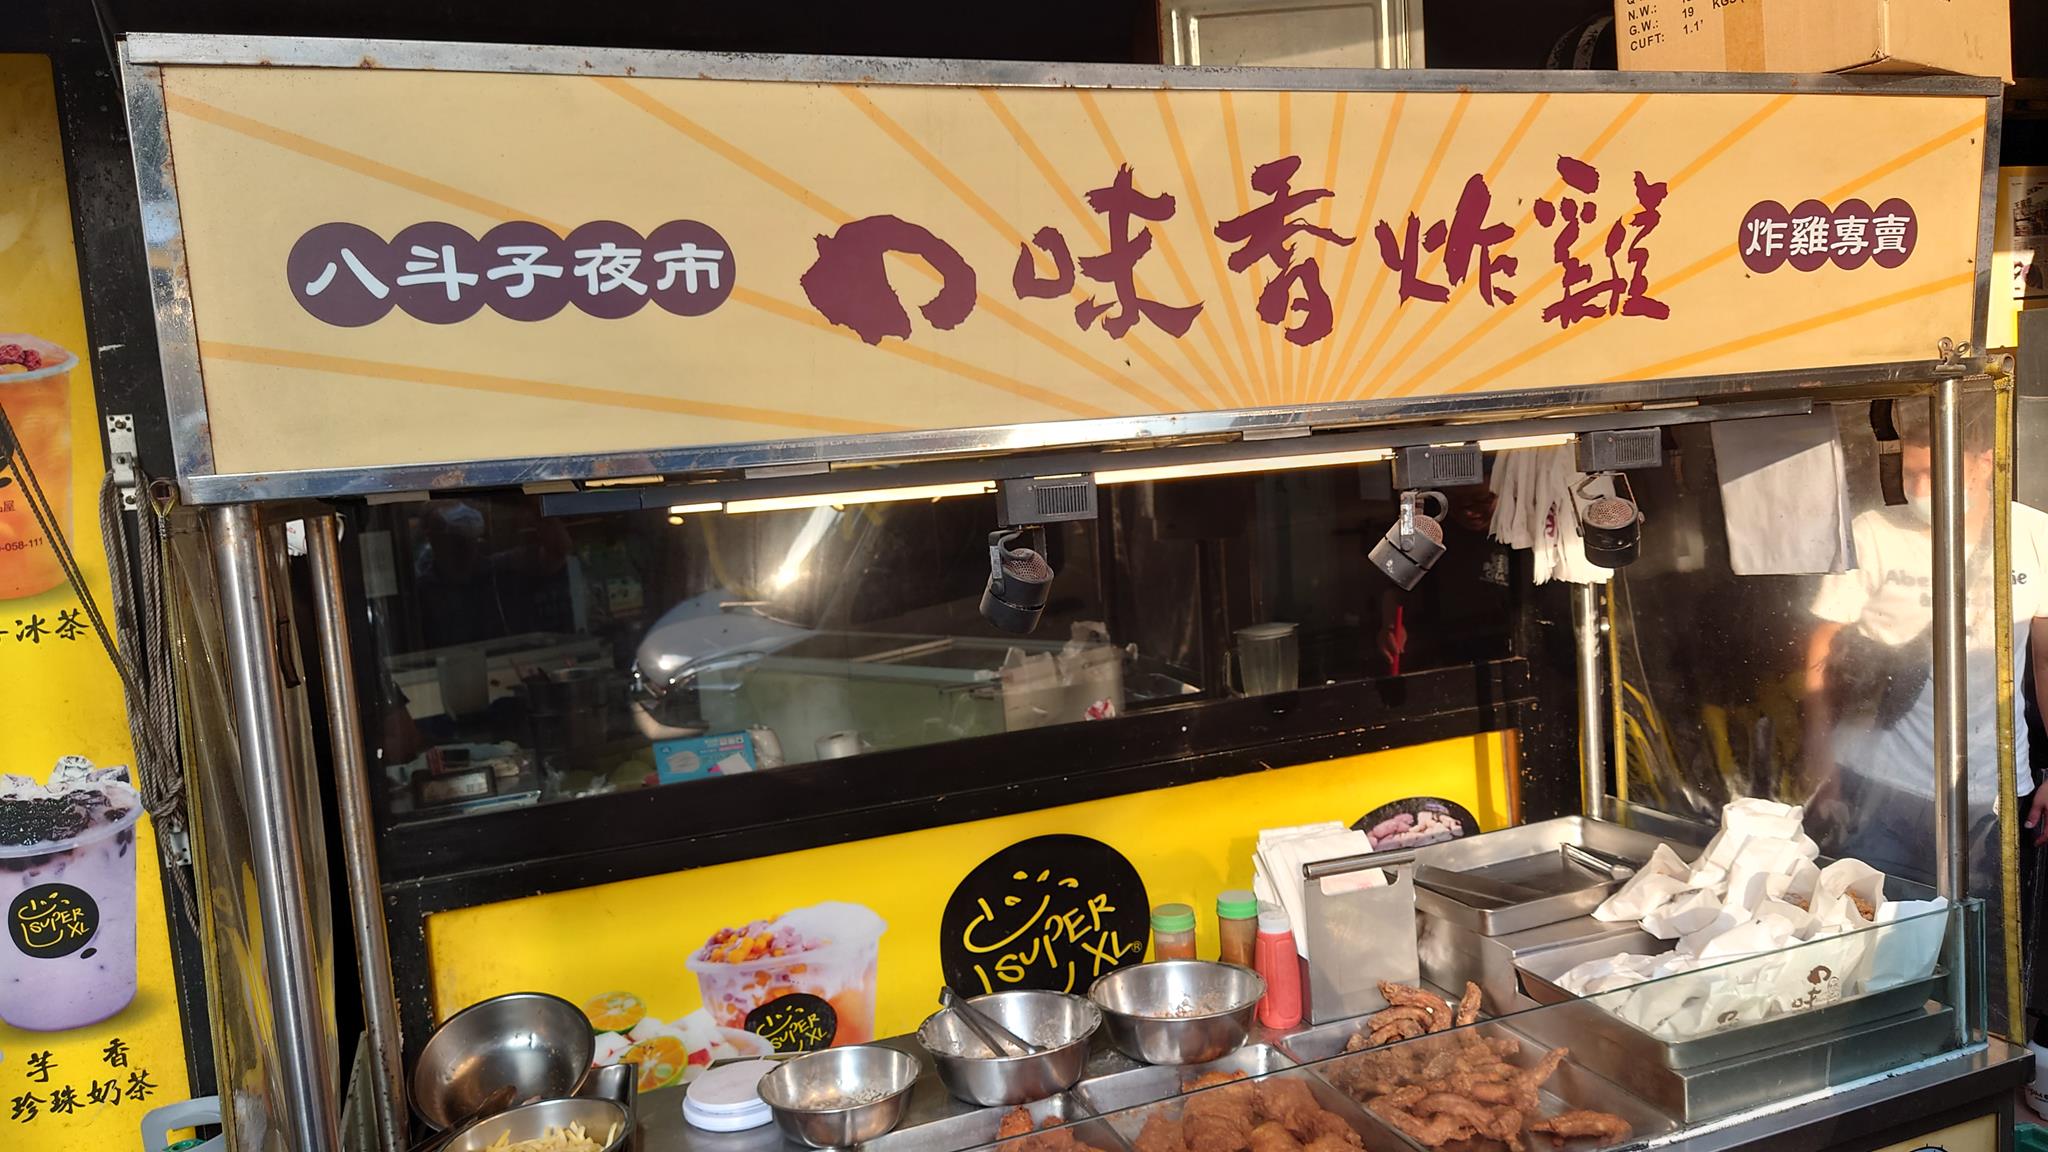 食記 口味香炸雞 用可口的雞腿炸雞當下午茶吧 基隆新豐店 台灣貪吃胖的玩樂故事